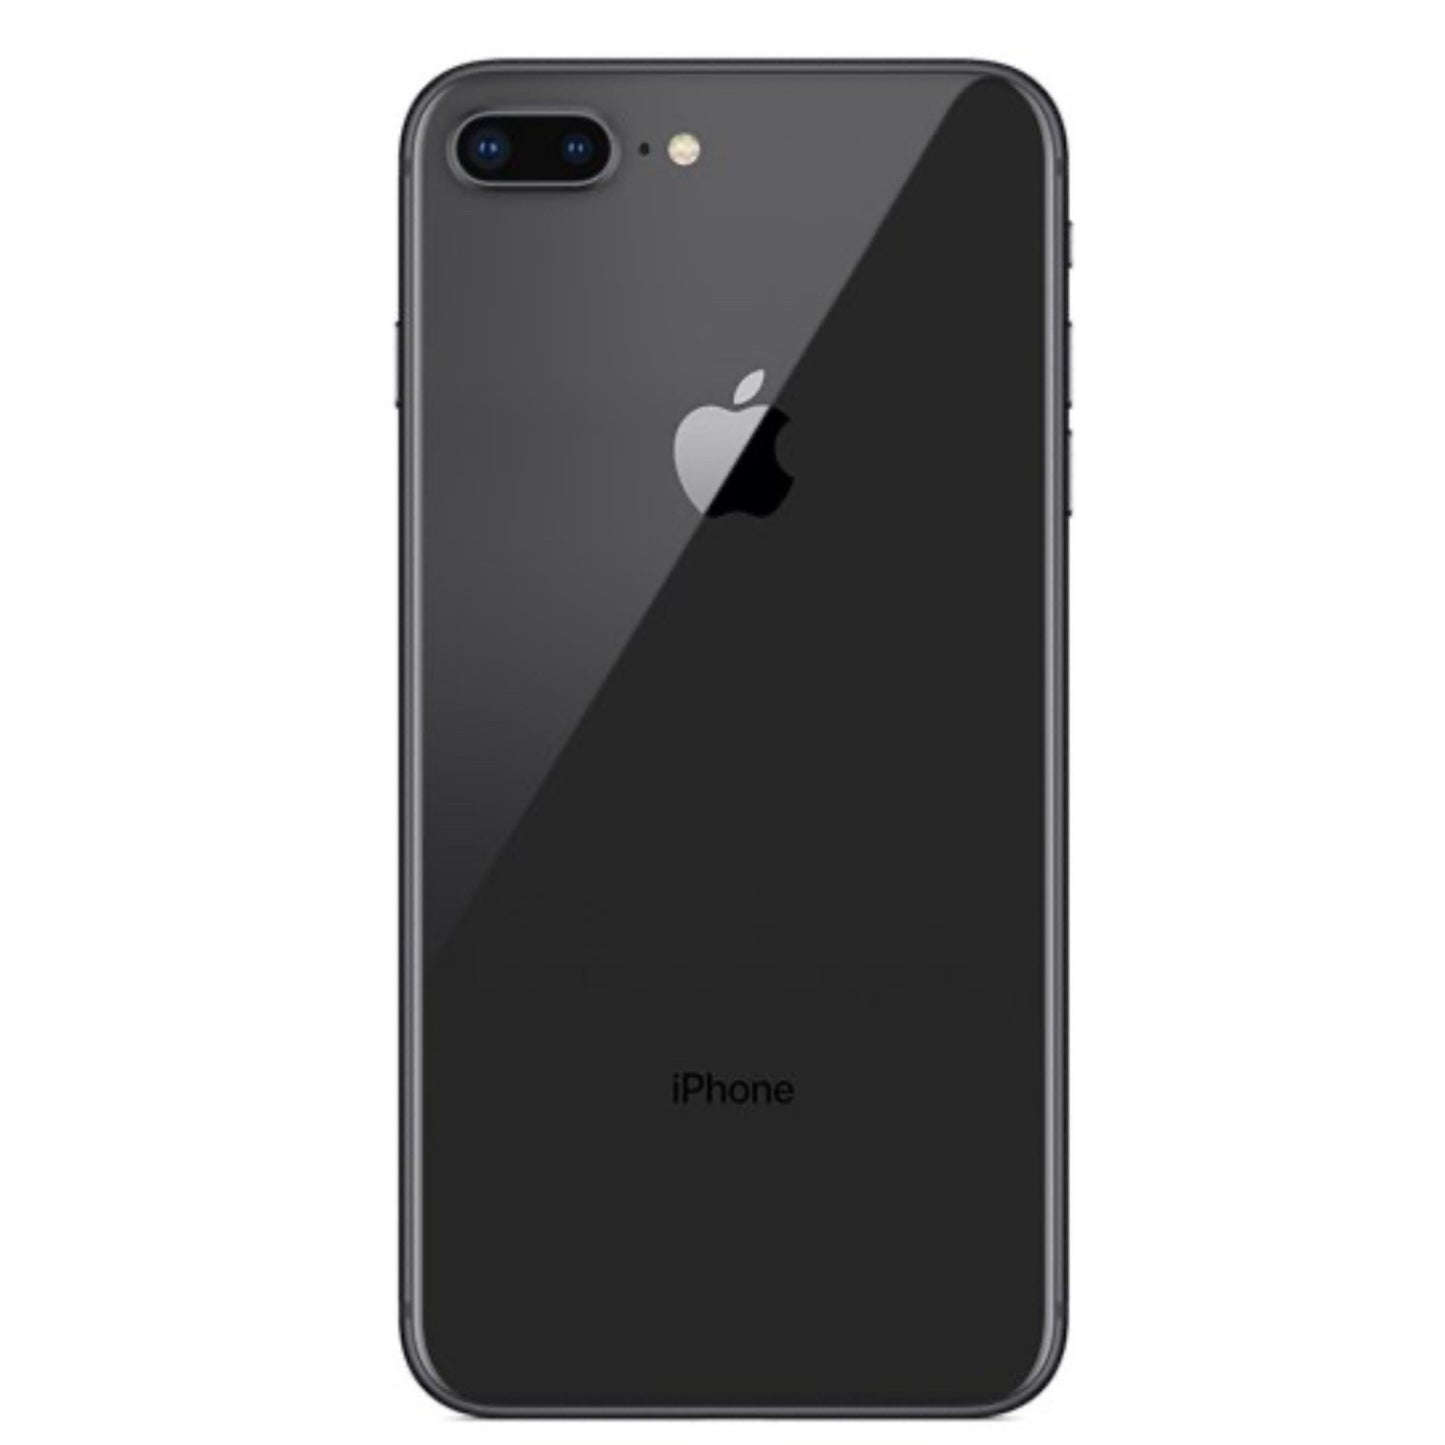 iPhone 8 Plus Black 256GB (Unlocked) Pre-Owned